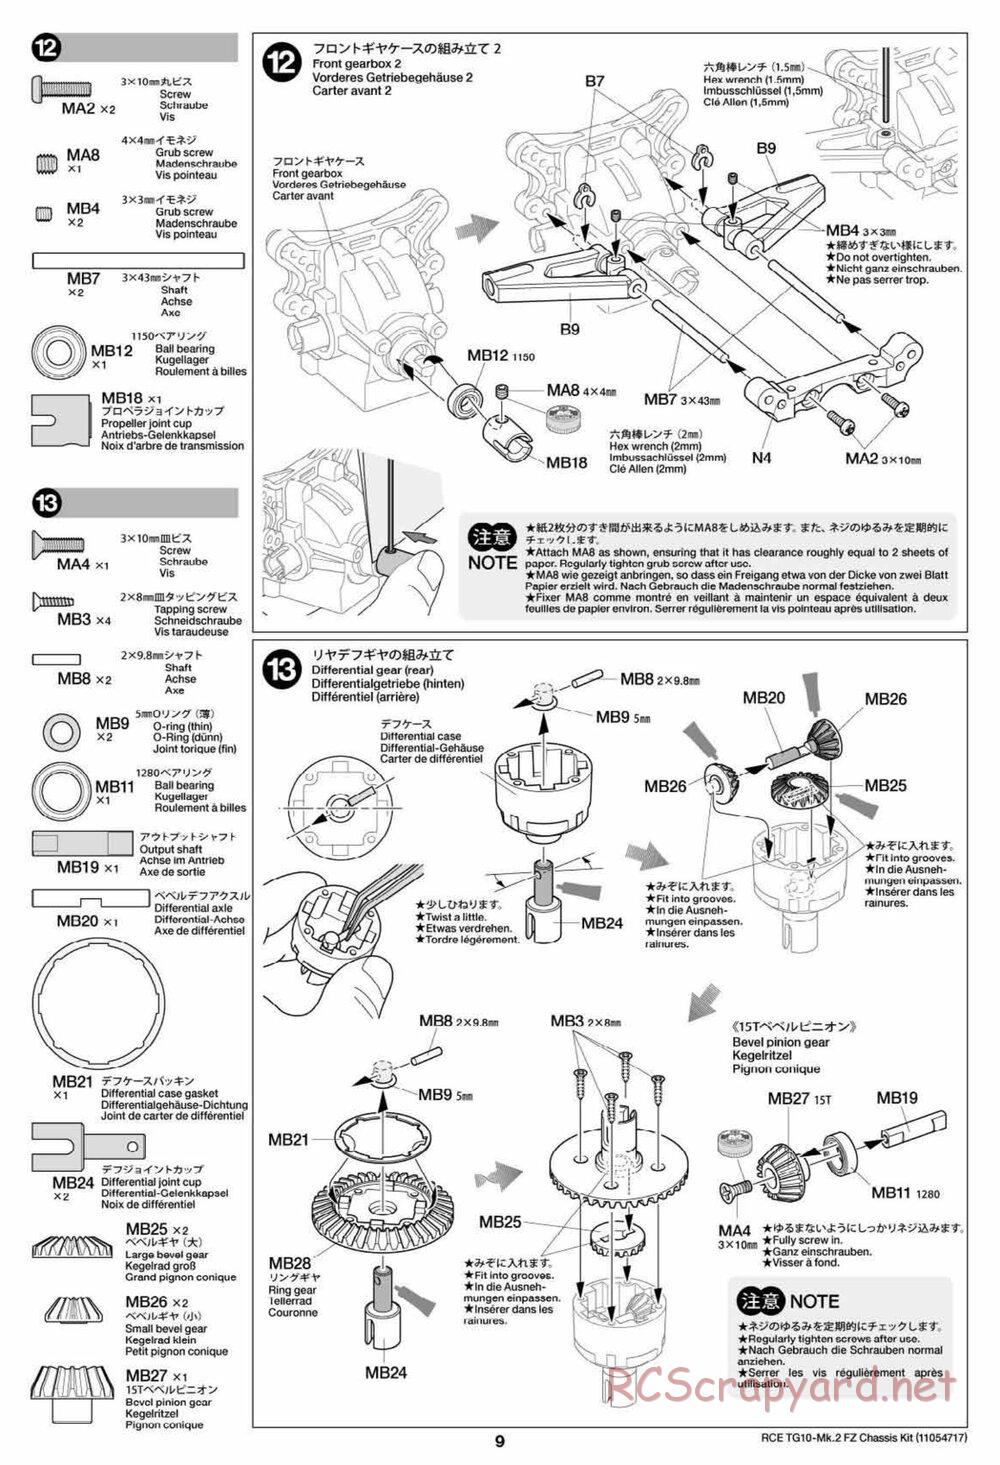 Tamiya - TG10 Mk.2 FZ Chassis - Manual - Page 9